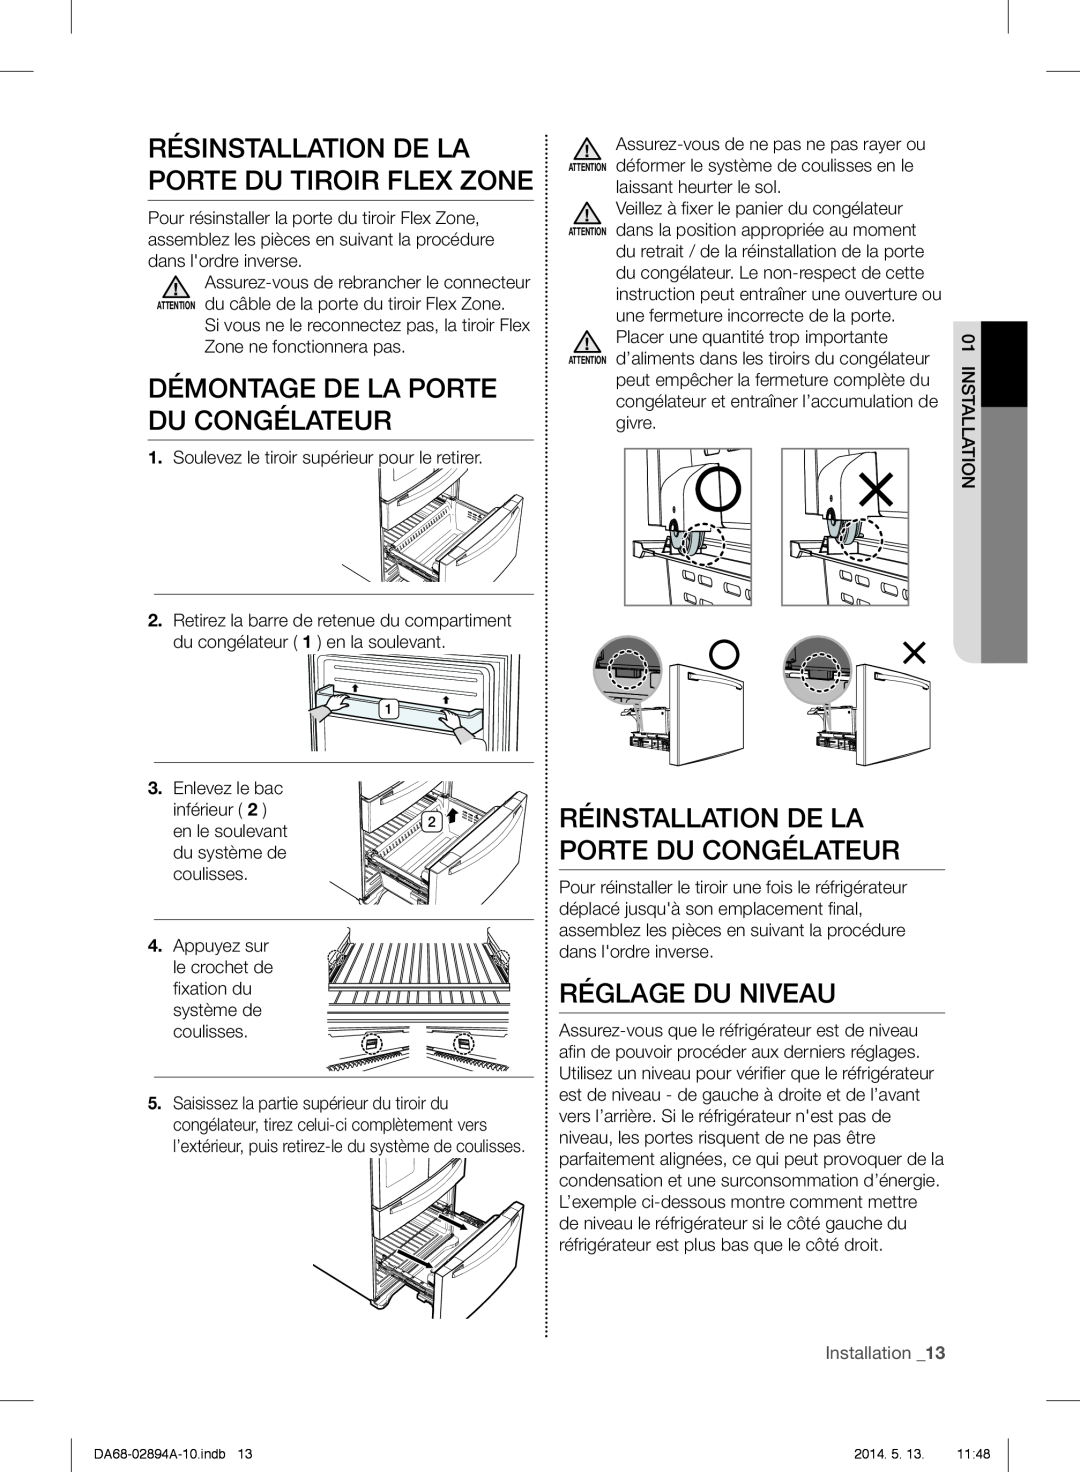 Samsung RF31FMESBSR user manual Résinstallation De La Porte Du Tiroir Flex Zone, Démontage De La Porte Du Congélateur 